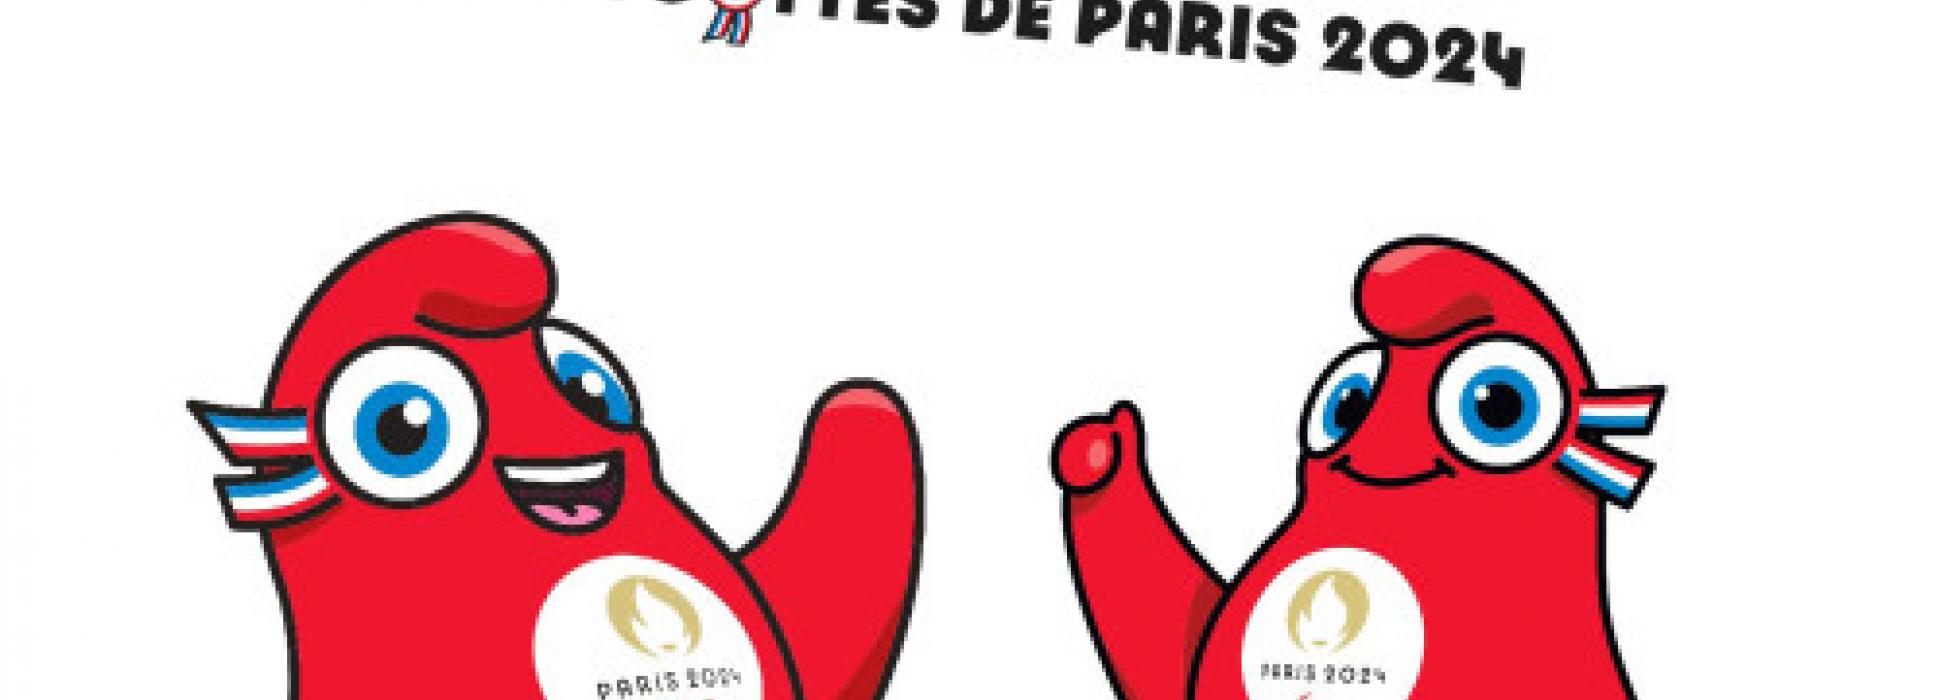 En Normandie, la société Gipsy Toys relève le challenge de la conception des mascottes des Jeux Olympiques